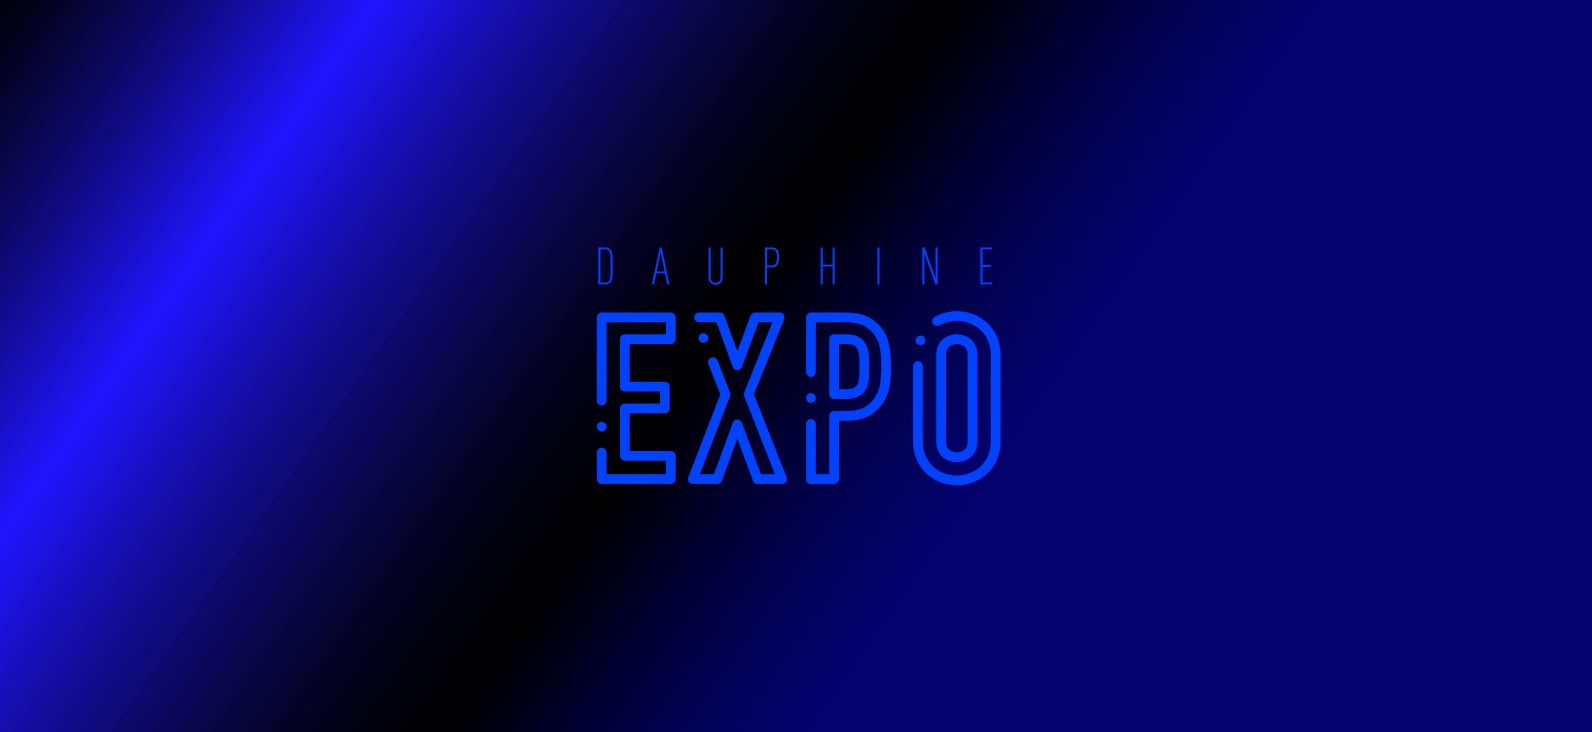 Retour sur la Dauphine Expo